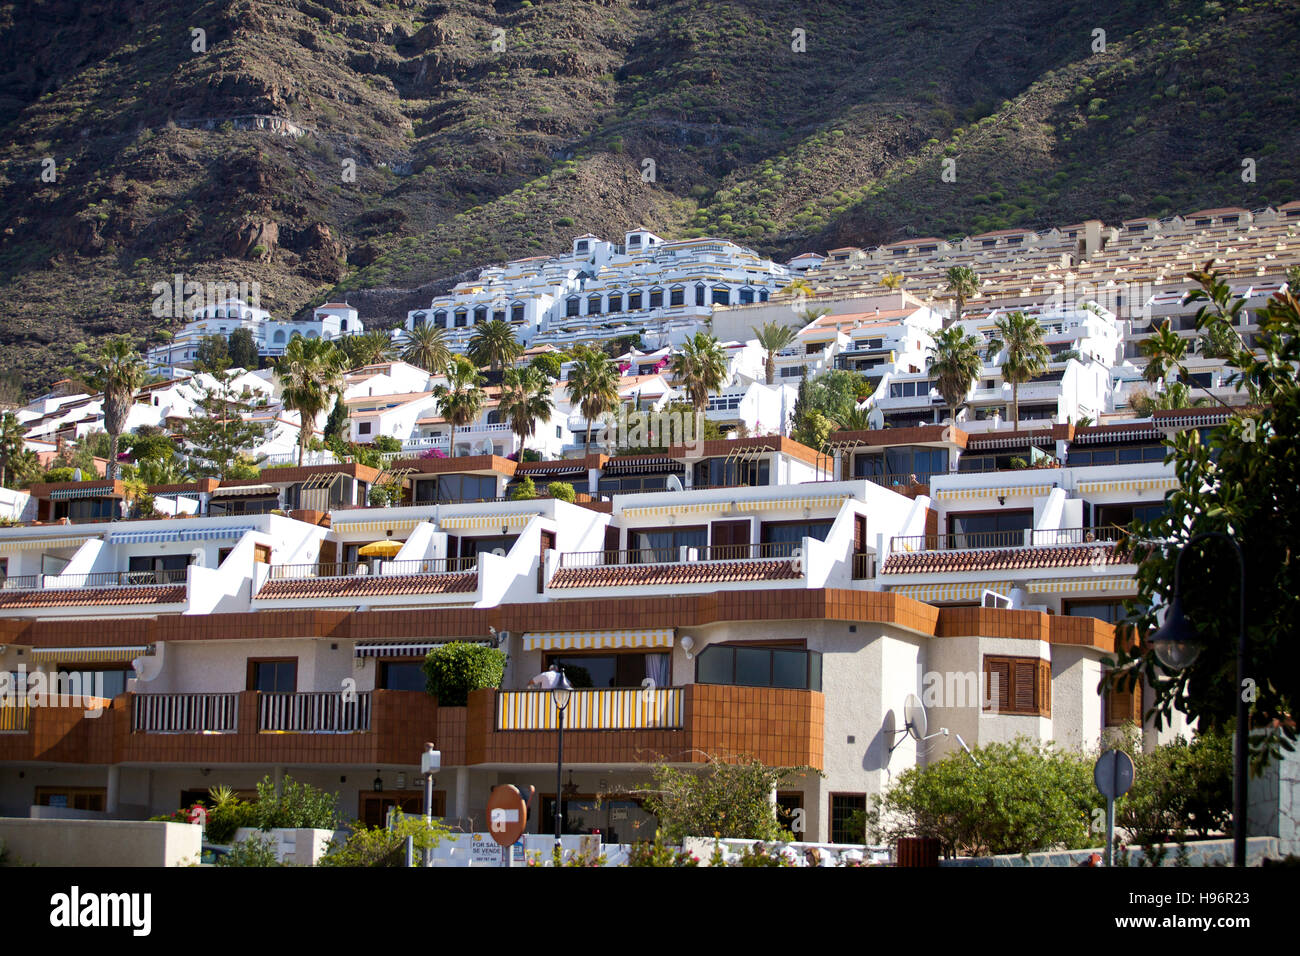 Zona de viviendas, casas de vacaciones en Puerto de Santiago, Tenerife, España Foto de stock